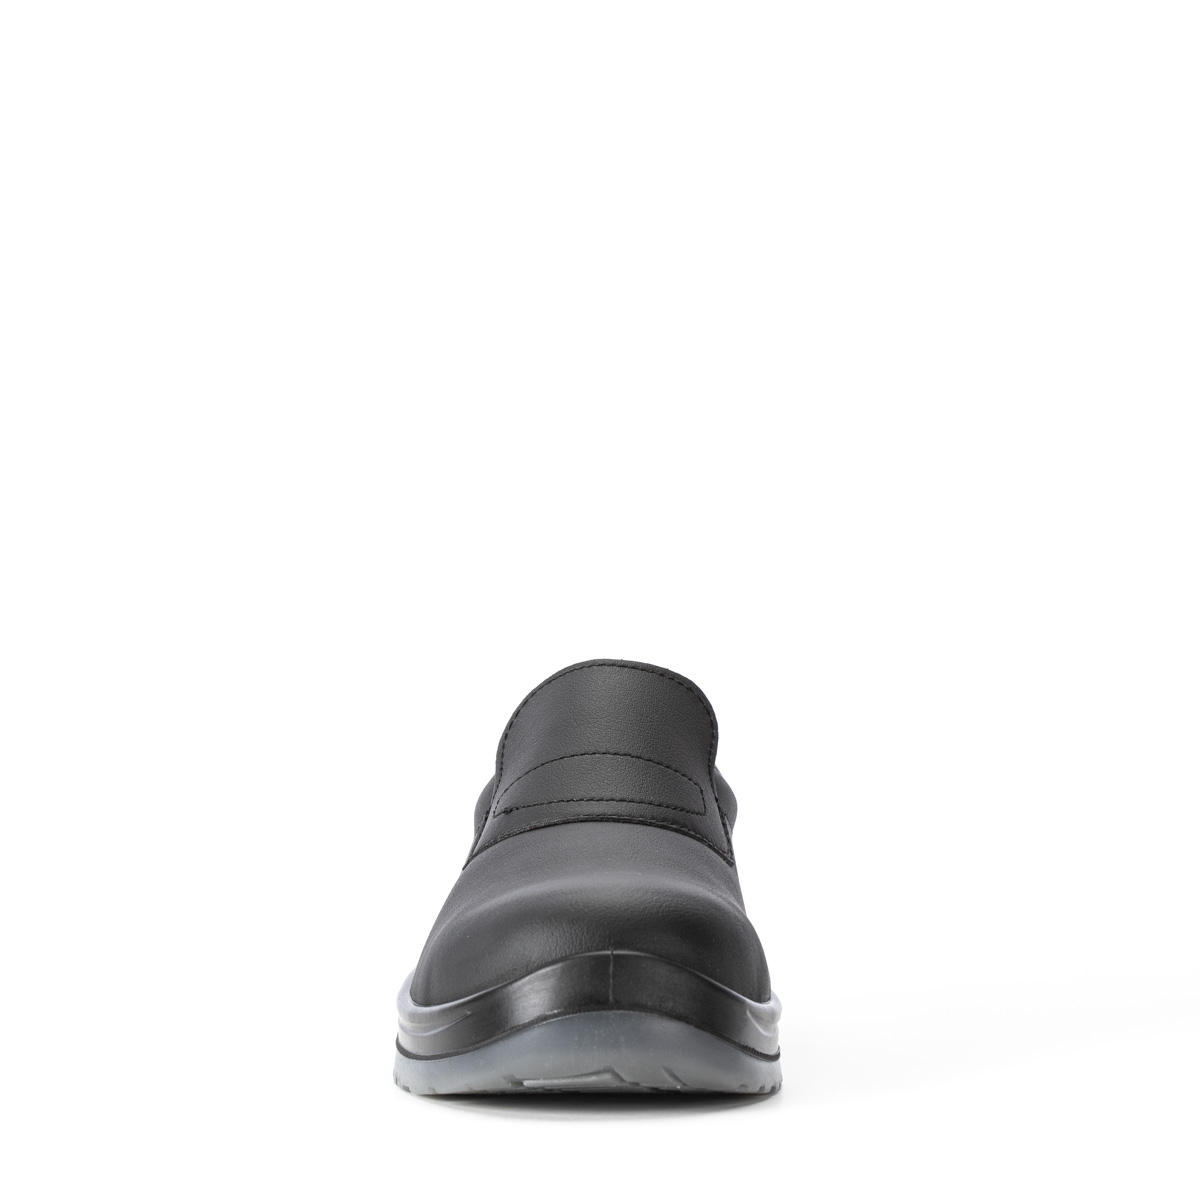 Crystal VENEZIA - Chaussure con classe di protezione S2 SRC - Codice  modello 86203-01 Sixton Peak Safety Shoes